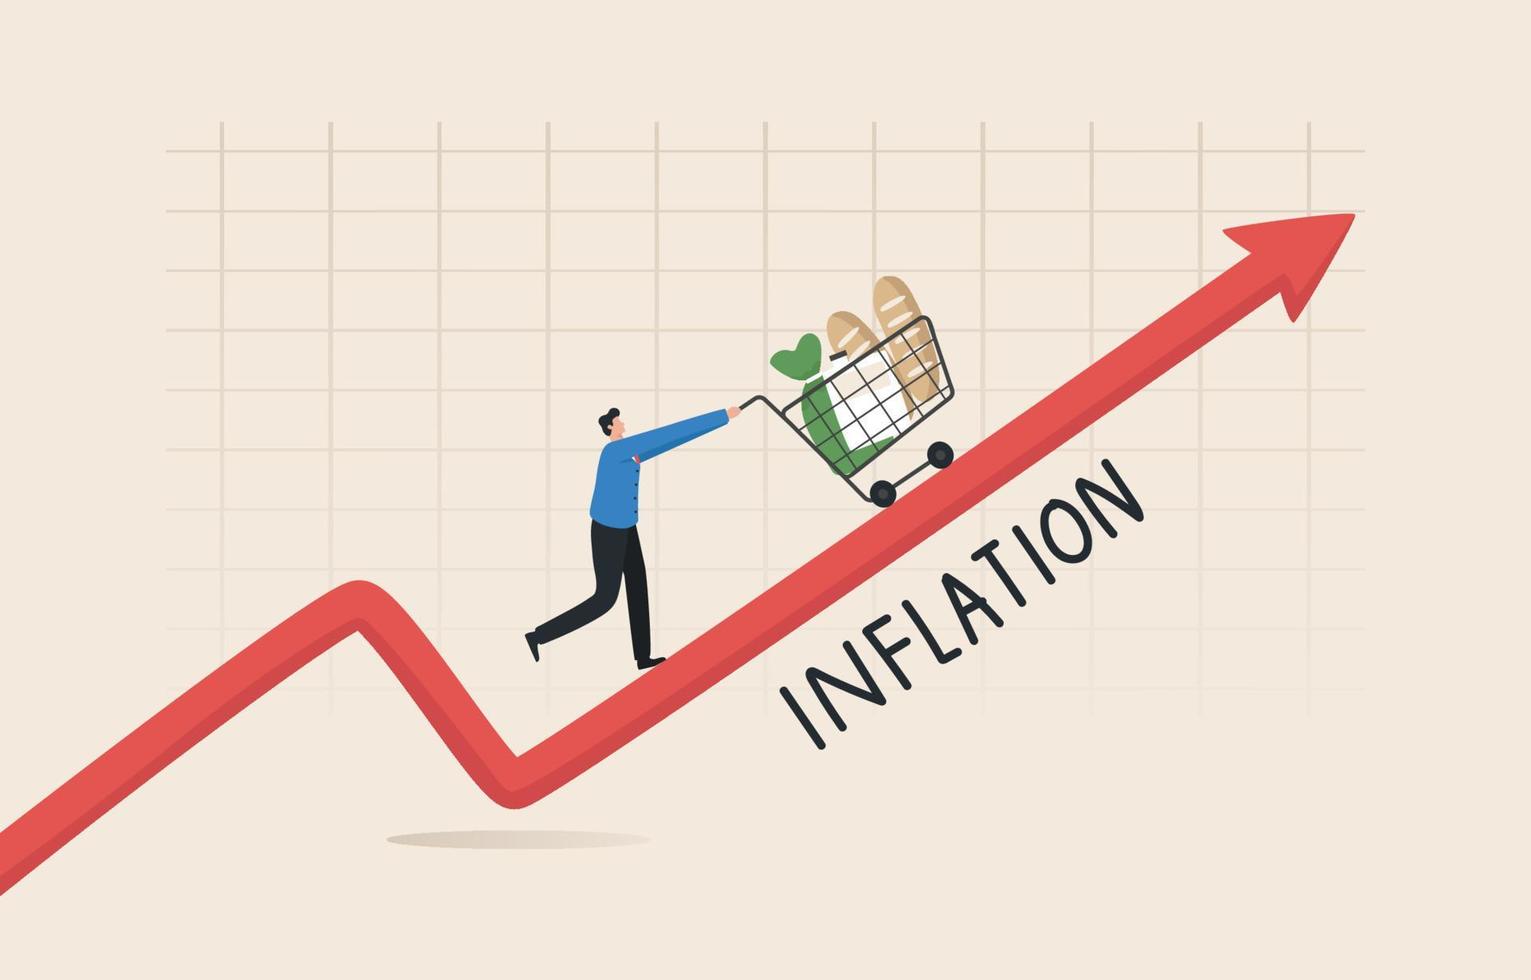 Lebensmittel- und Preisinflation steigt nach Geldwertwachstumsideen finanzielle Probleme und prognostizierte Marktcrashs Krisenrisiko. der junge mann schob den einkaufswagen entlang der ansteigenden pfeilkarte. vektor